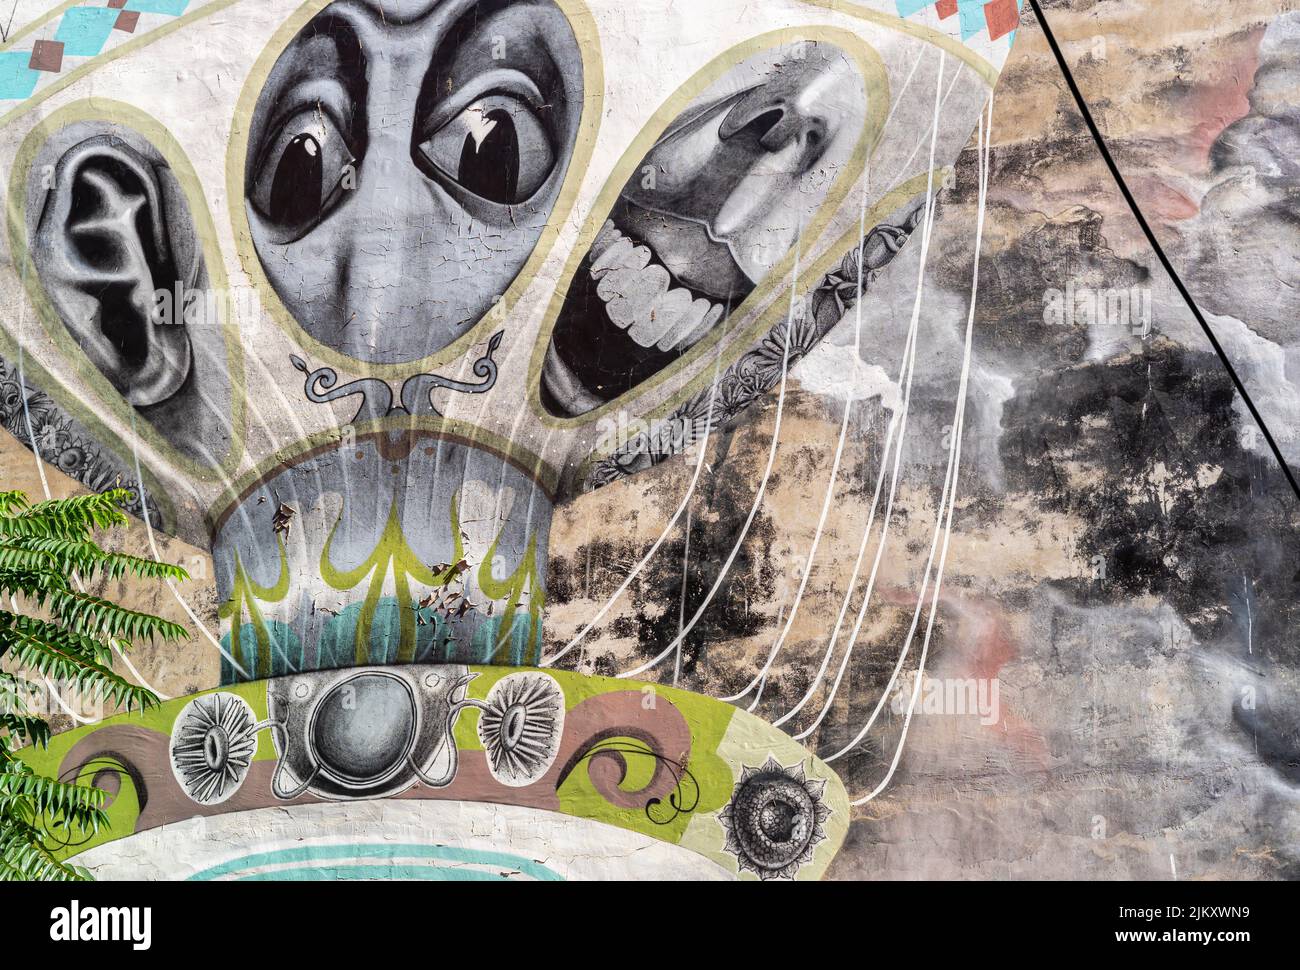 Arte callejero, mural del artista brasileño Claudio Ethos que representa globo de aire caliente con caras extrañas y distorsionadas, distrito Kadiköy de Estambul, Turquía Foto de stock